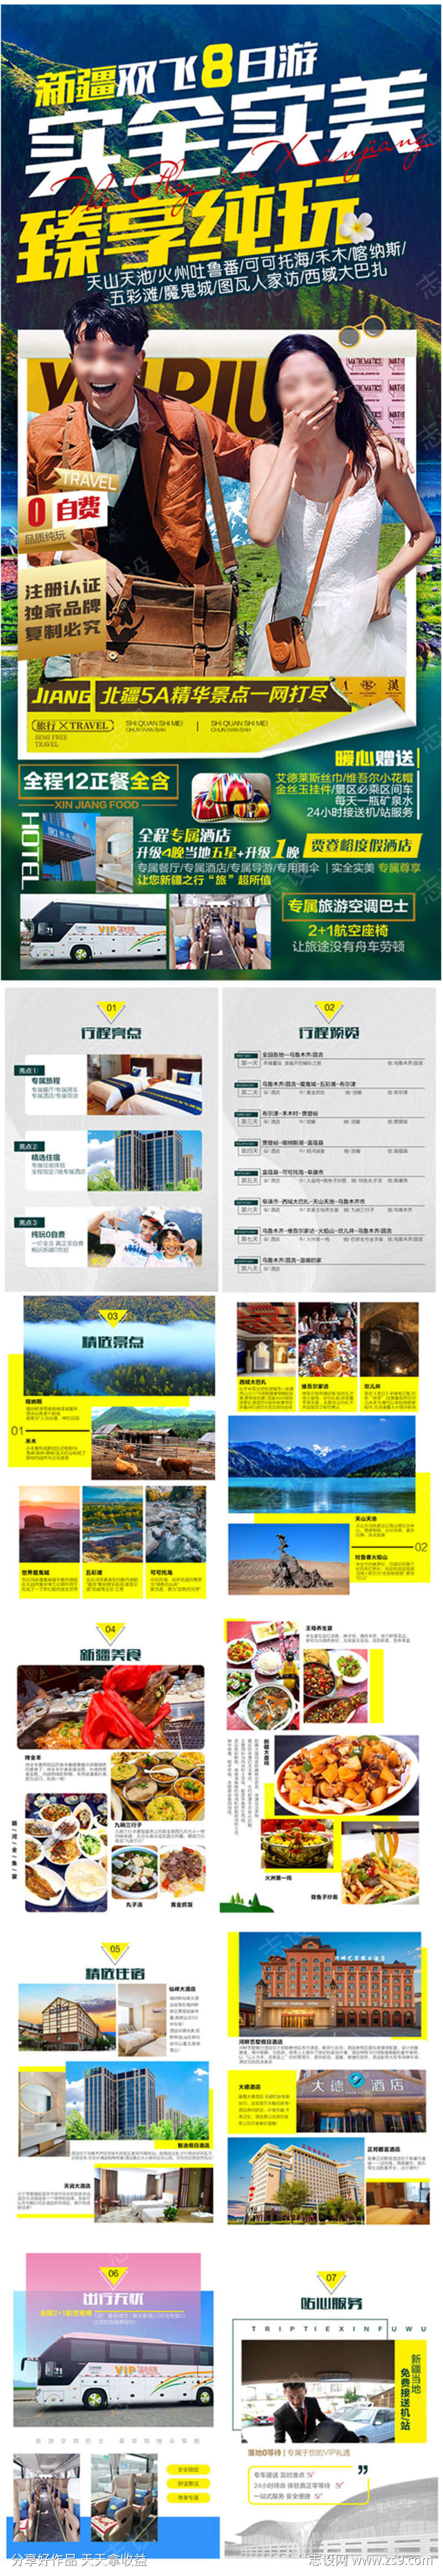 新疆旅游产品包装旅游海报广告